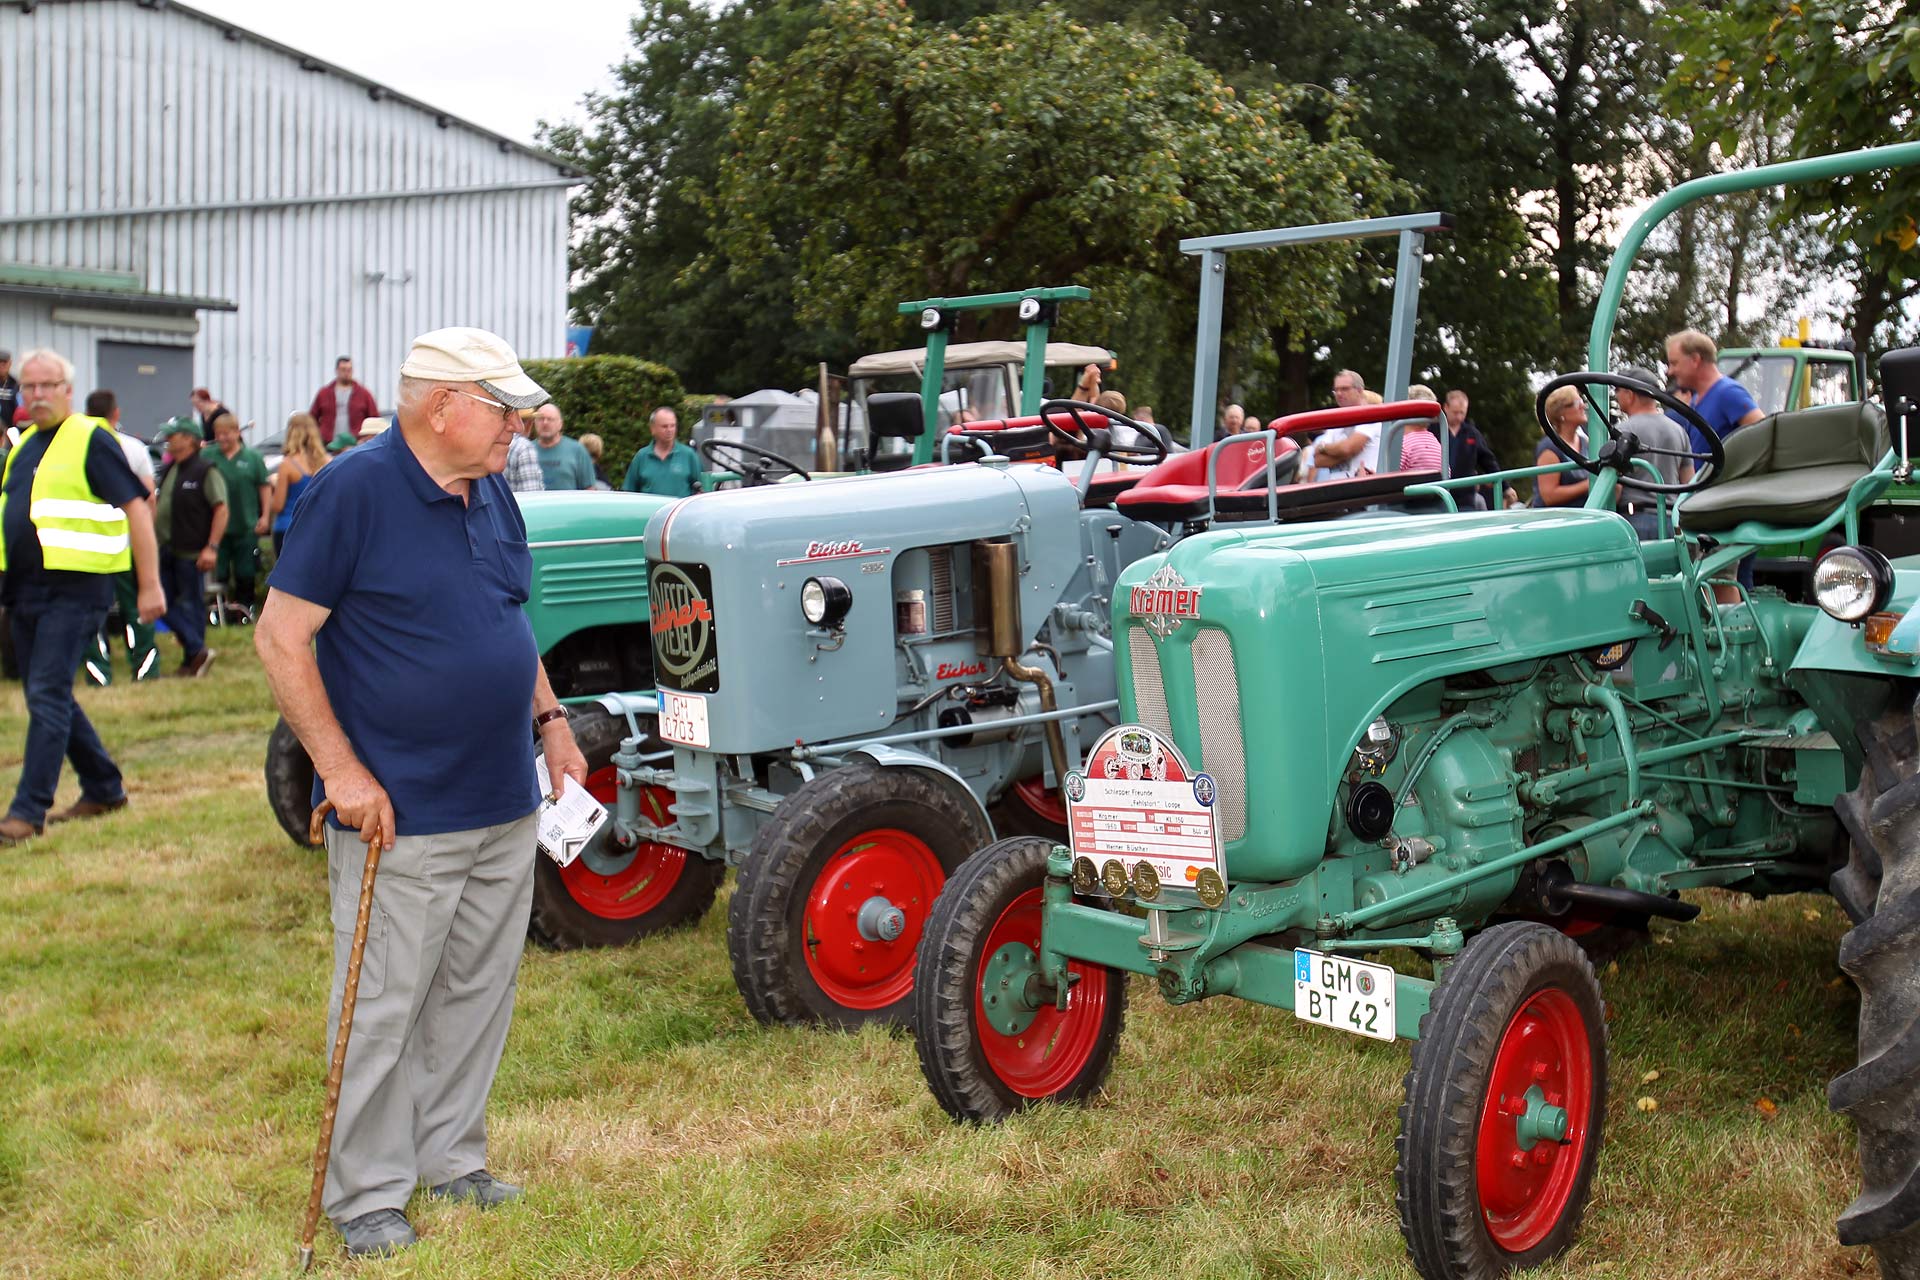 14. Historisches Oldtimer-Traktorentreffen in Hengstenberg